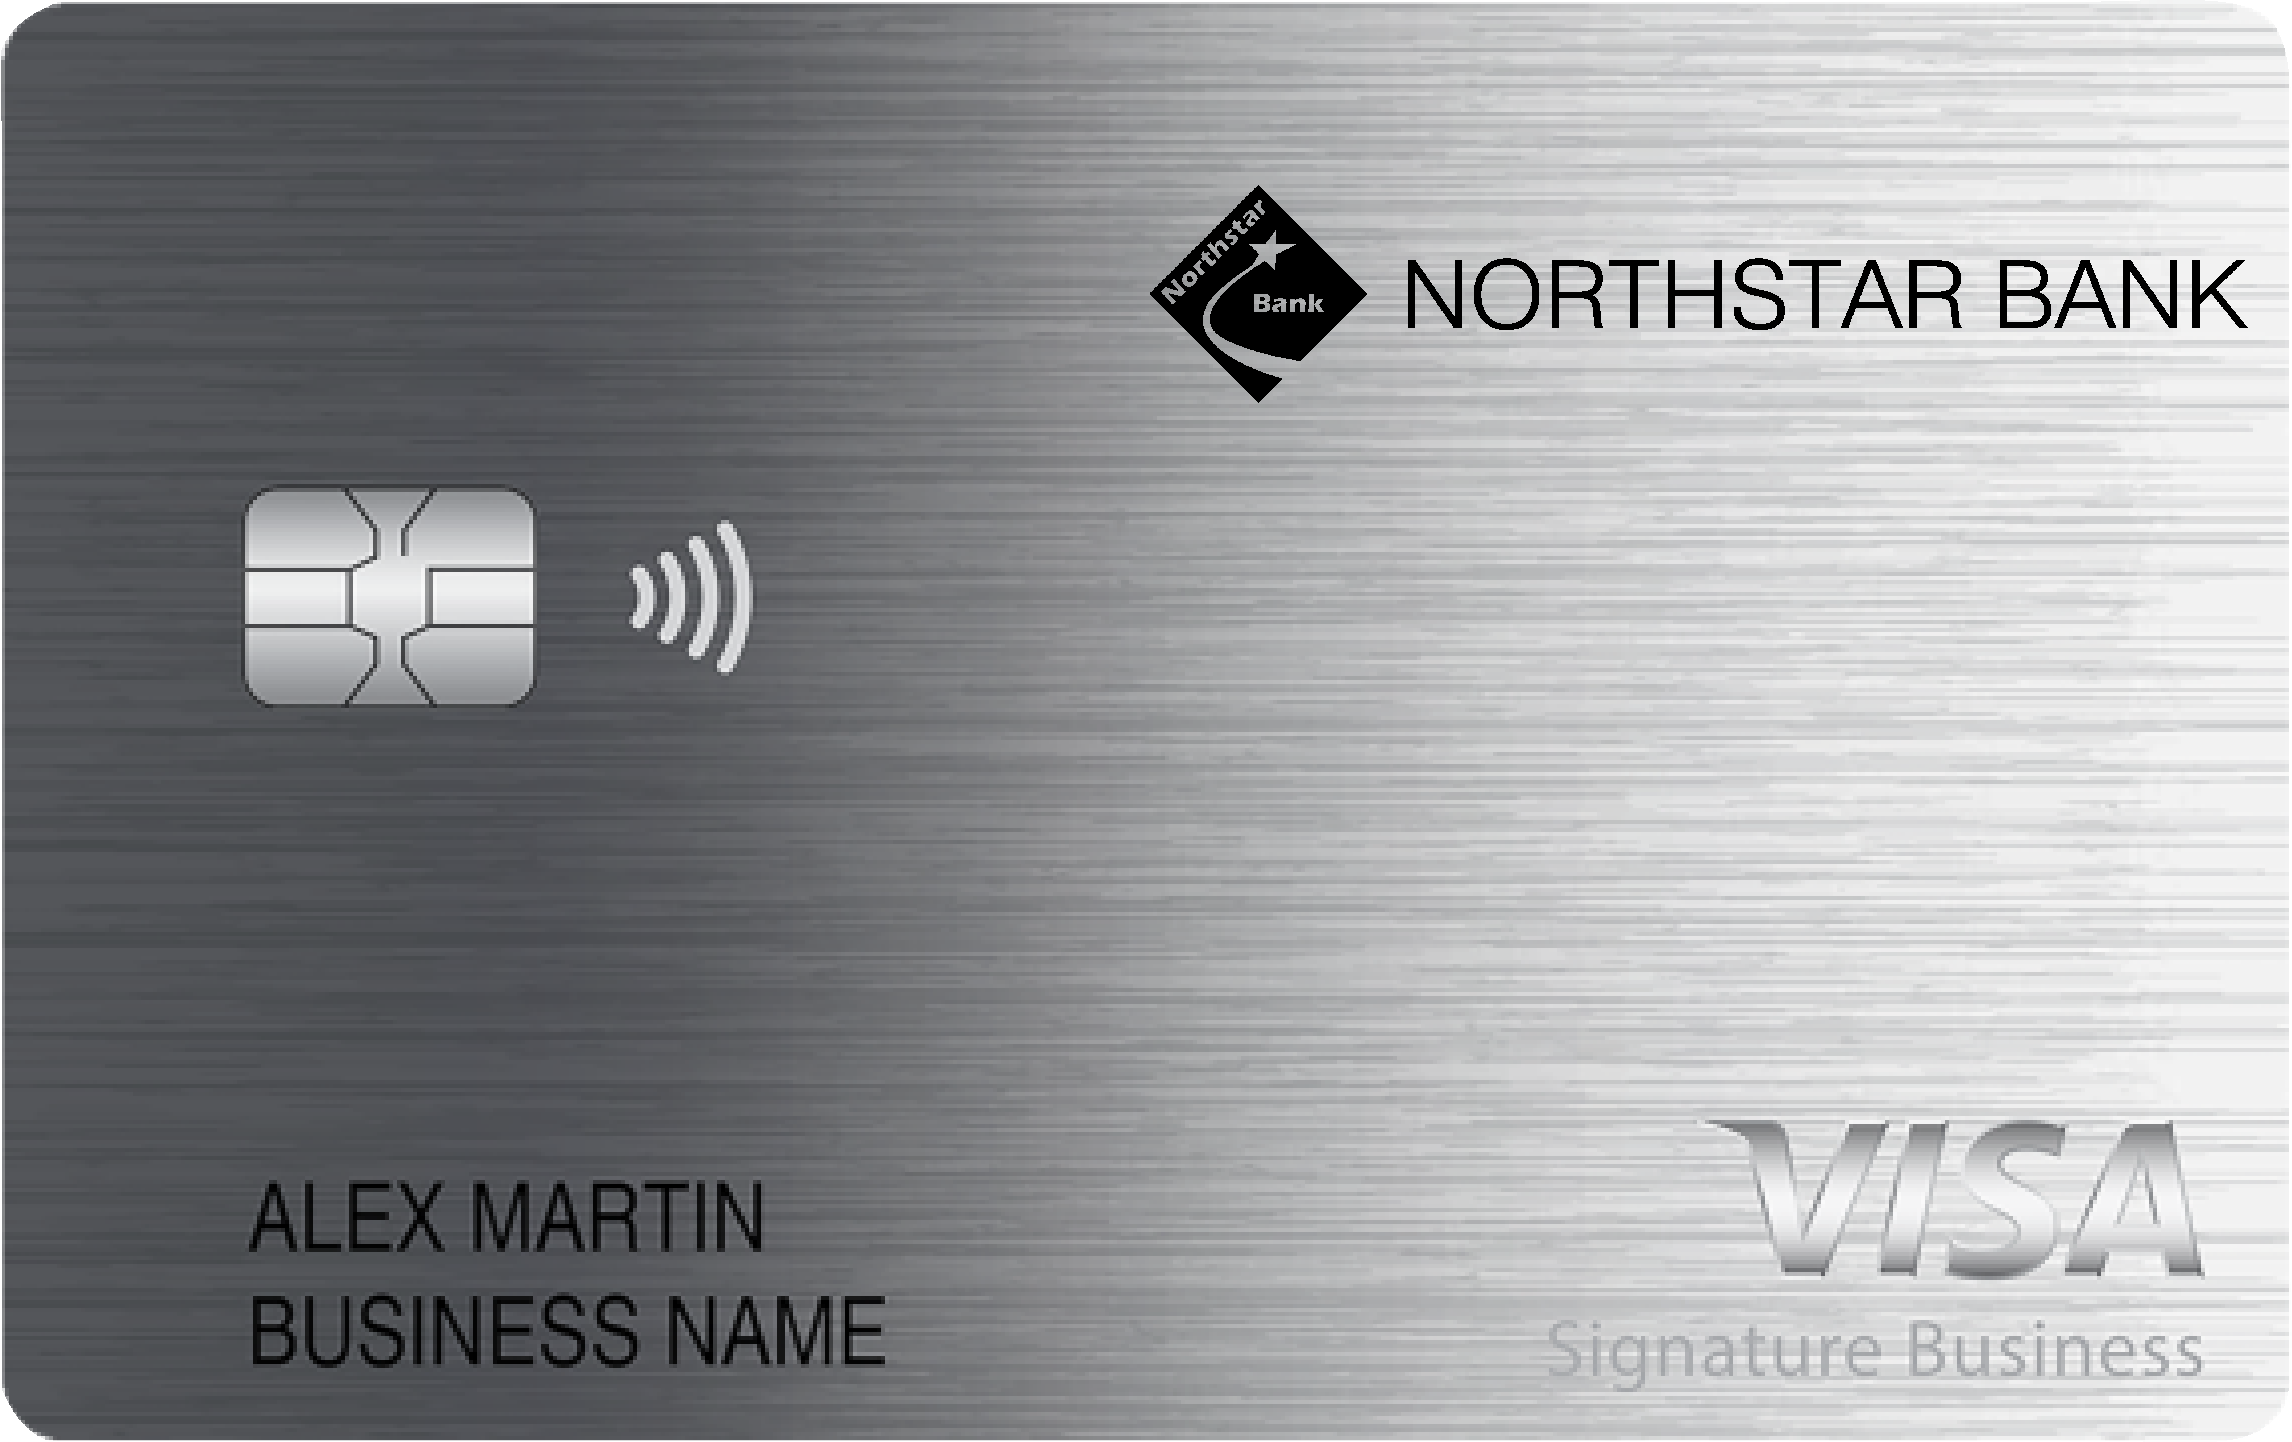 Northstar Bank Smart Business Rewards Card